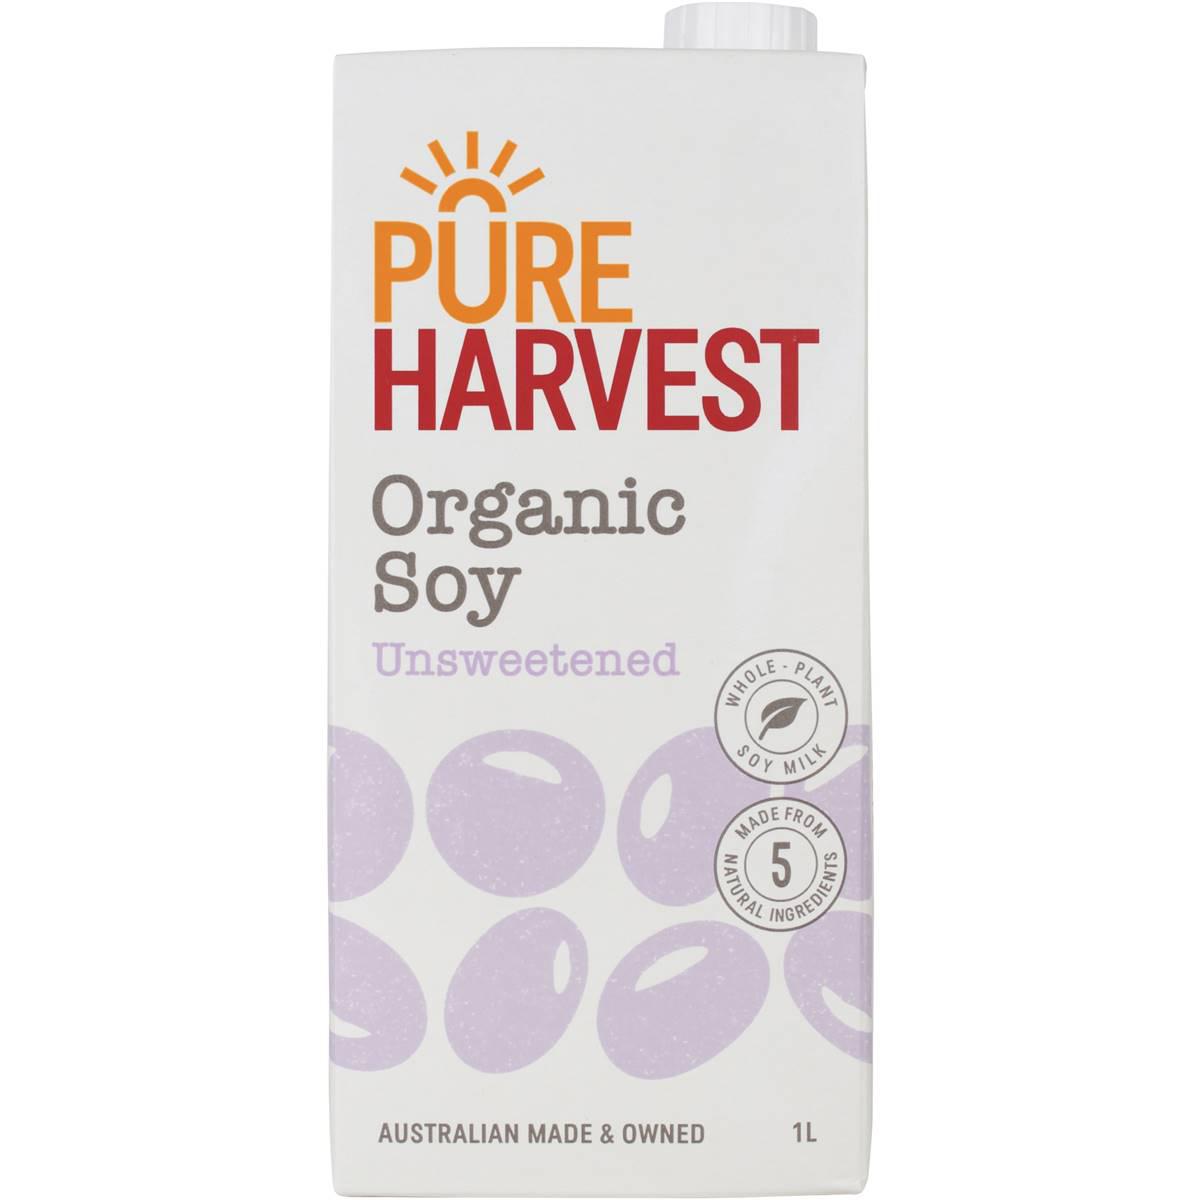 Pureharvest Organic Malt Free Soy Milk 1l